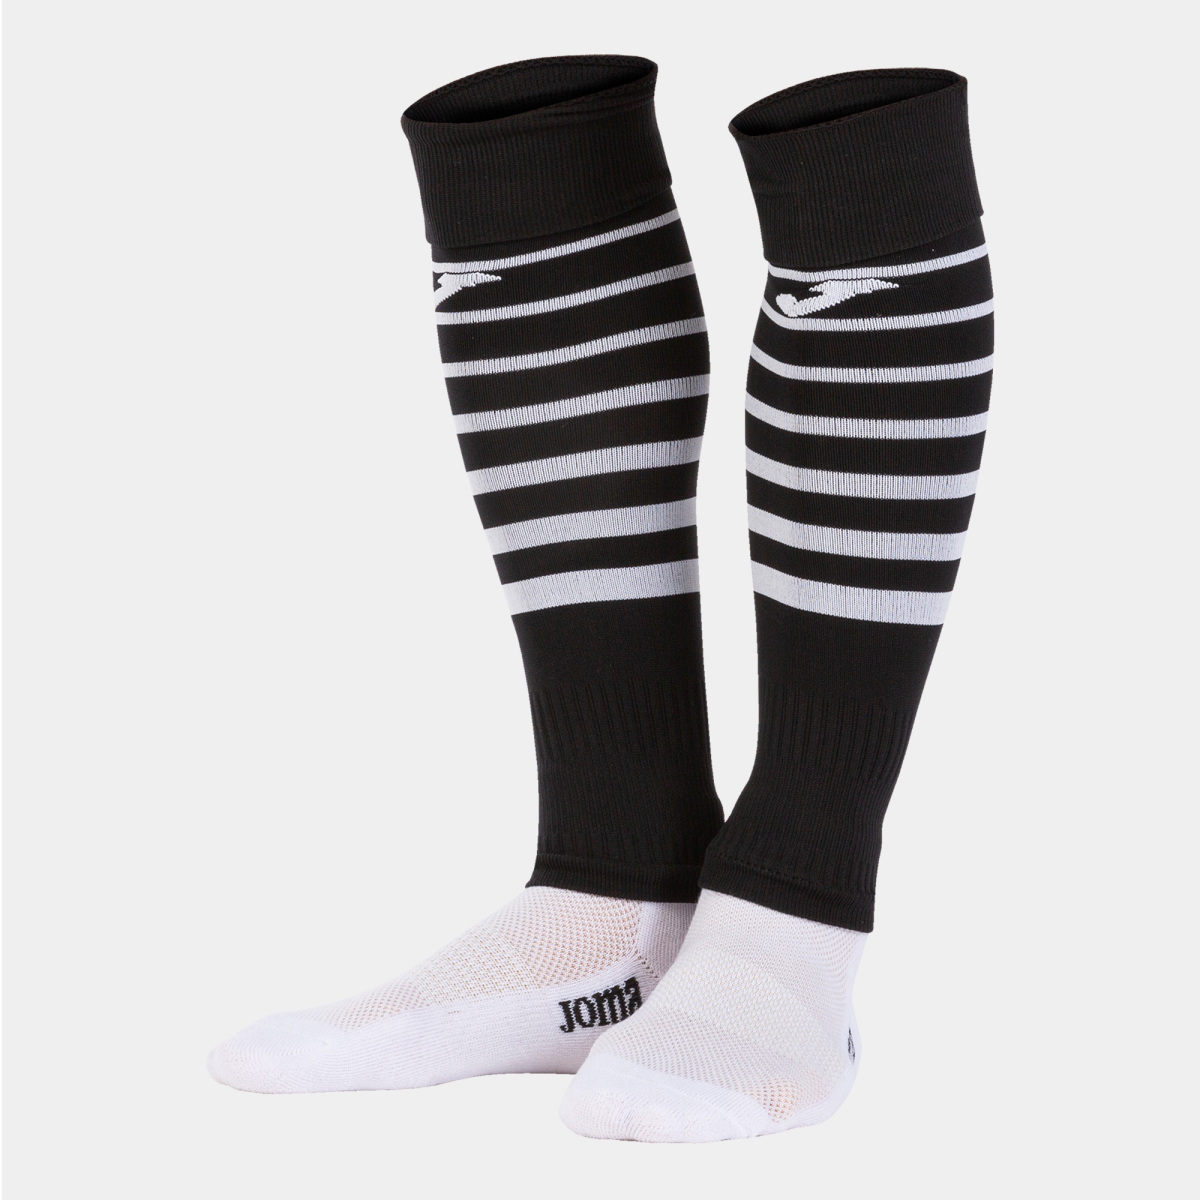 Premier Sleeve Socks